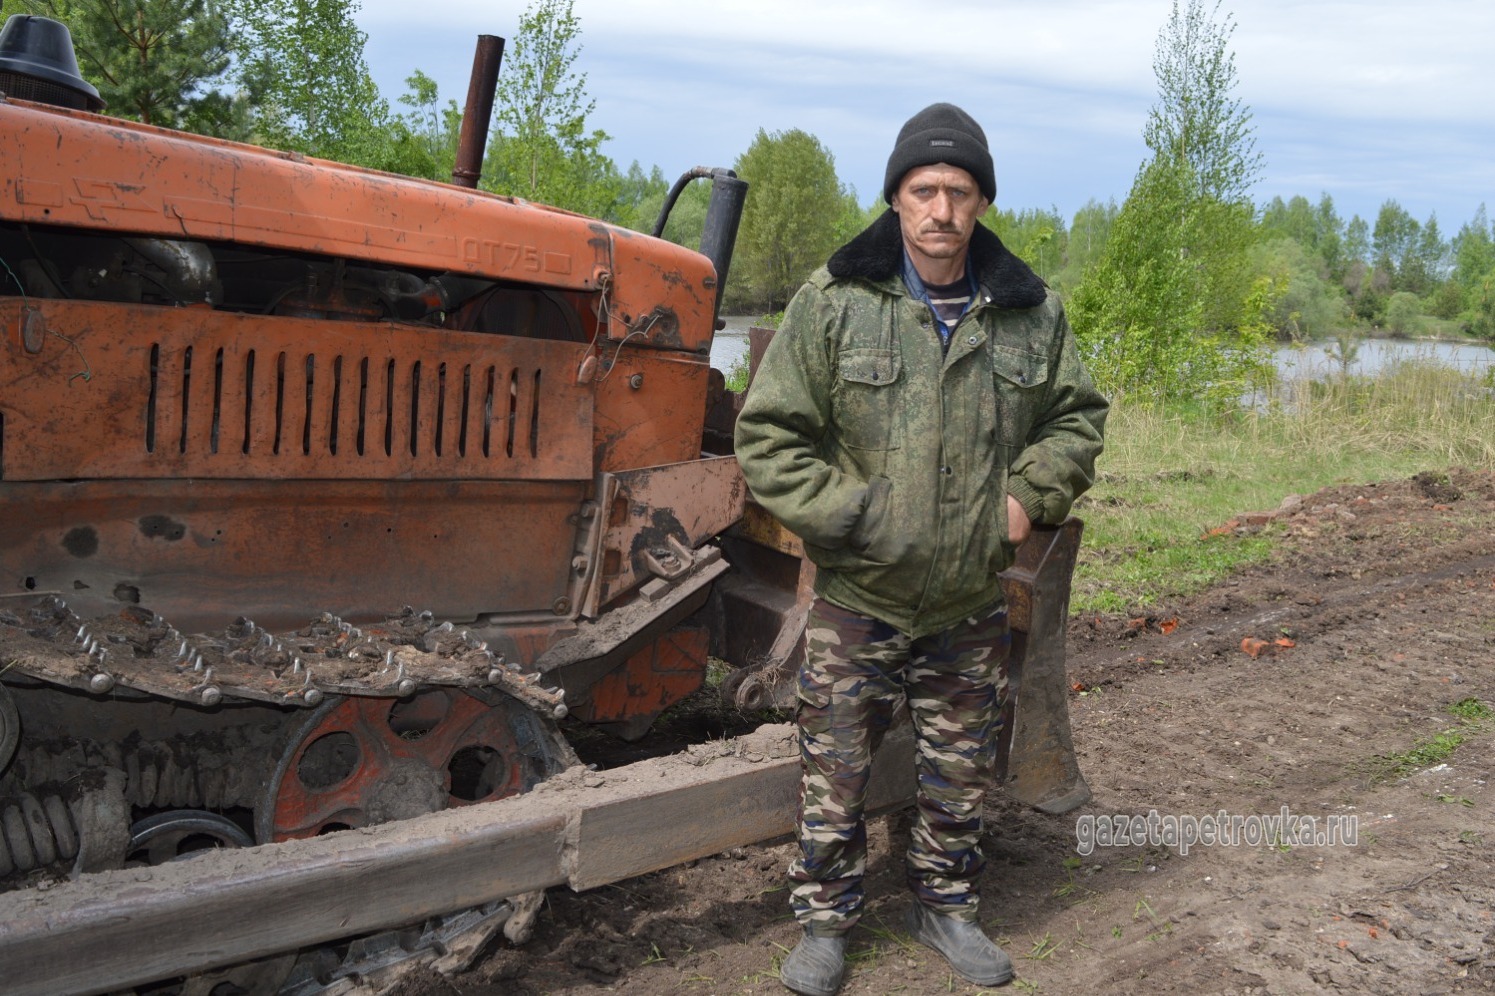 Механизатор Юрий Мещалкин благоустраивает местный пруд